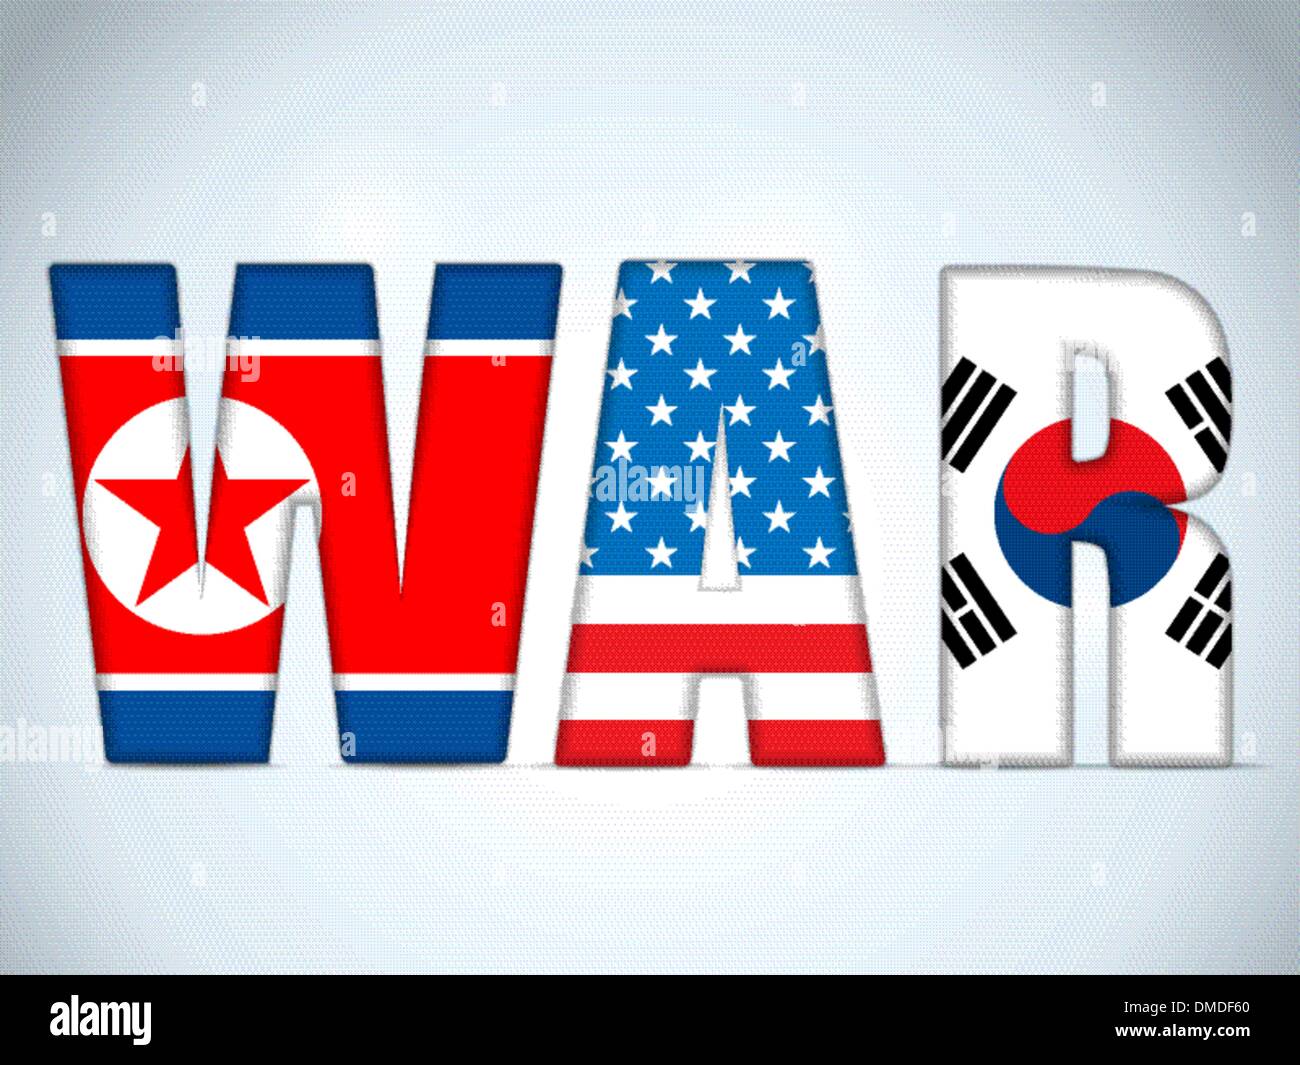 La Corée du Nord, États-Unis d'Amérique et la guerre de la Corée du Sud Illustration de Vecteur